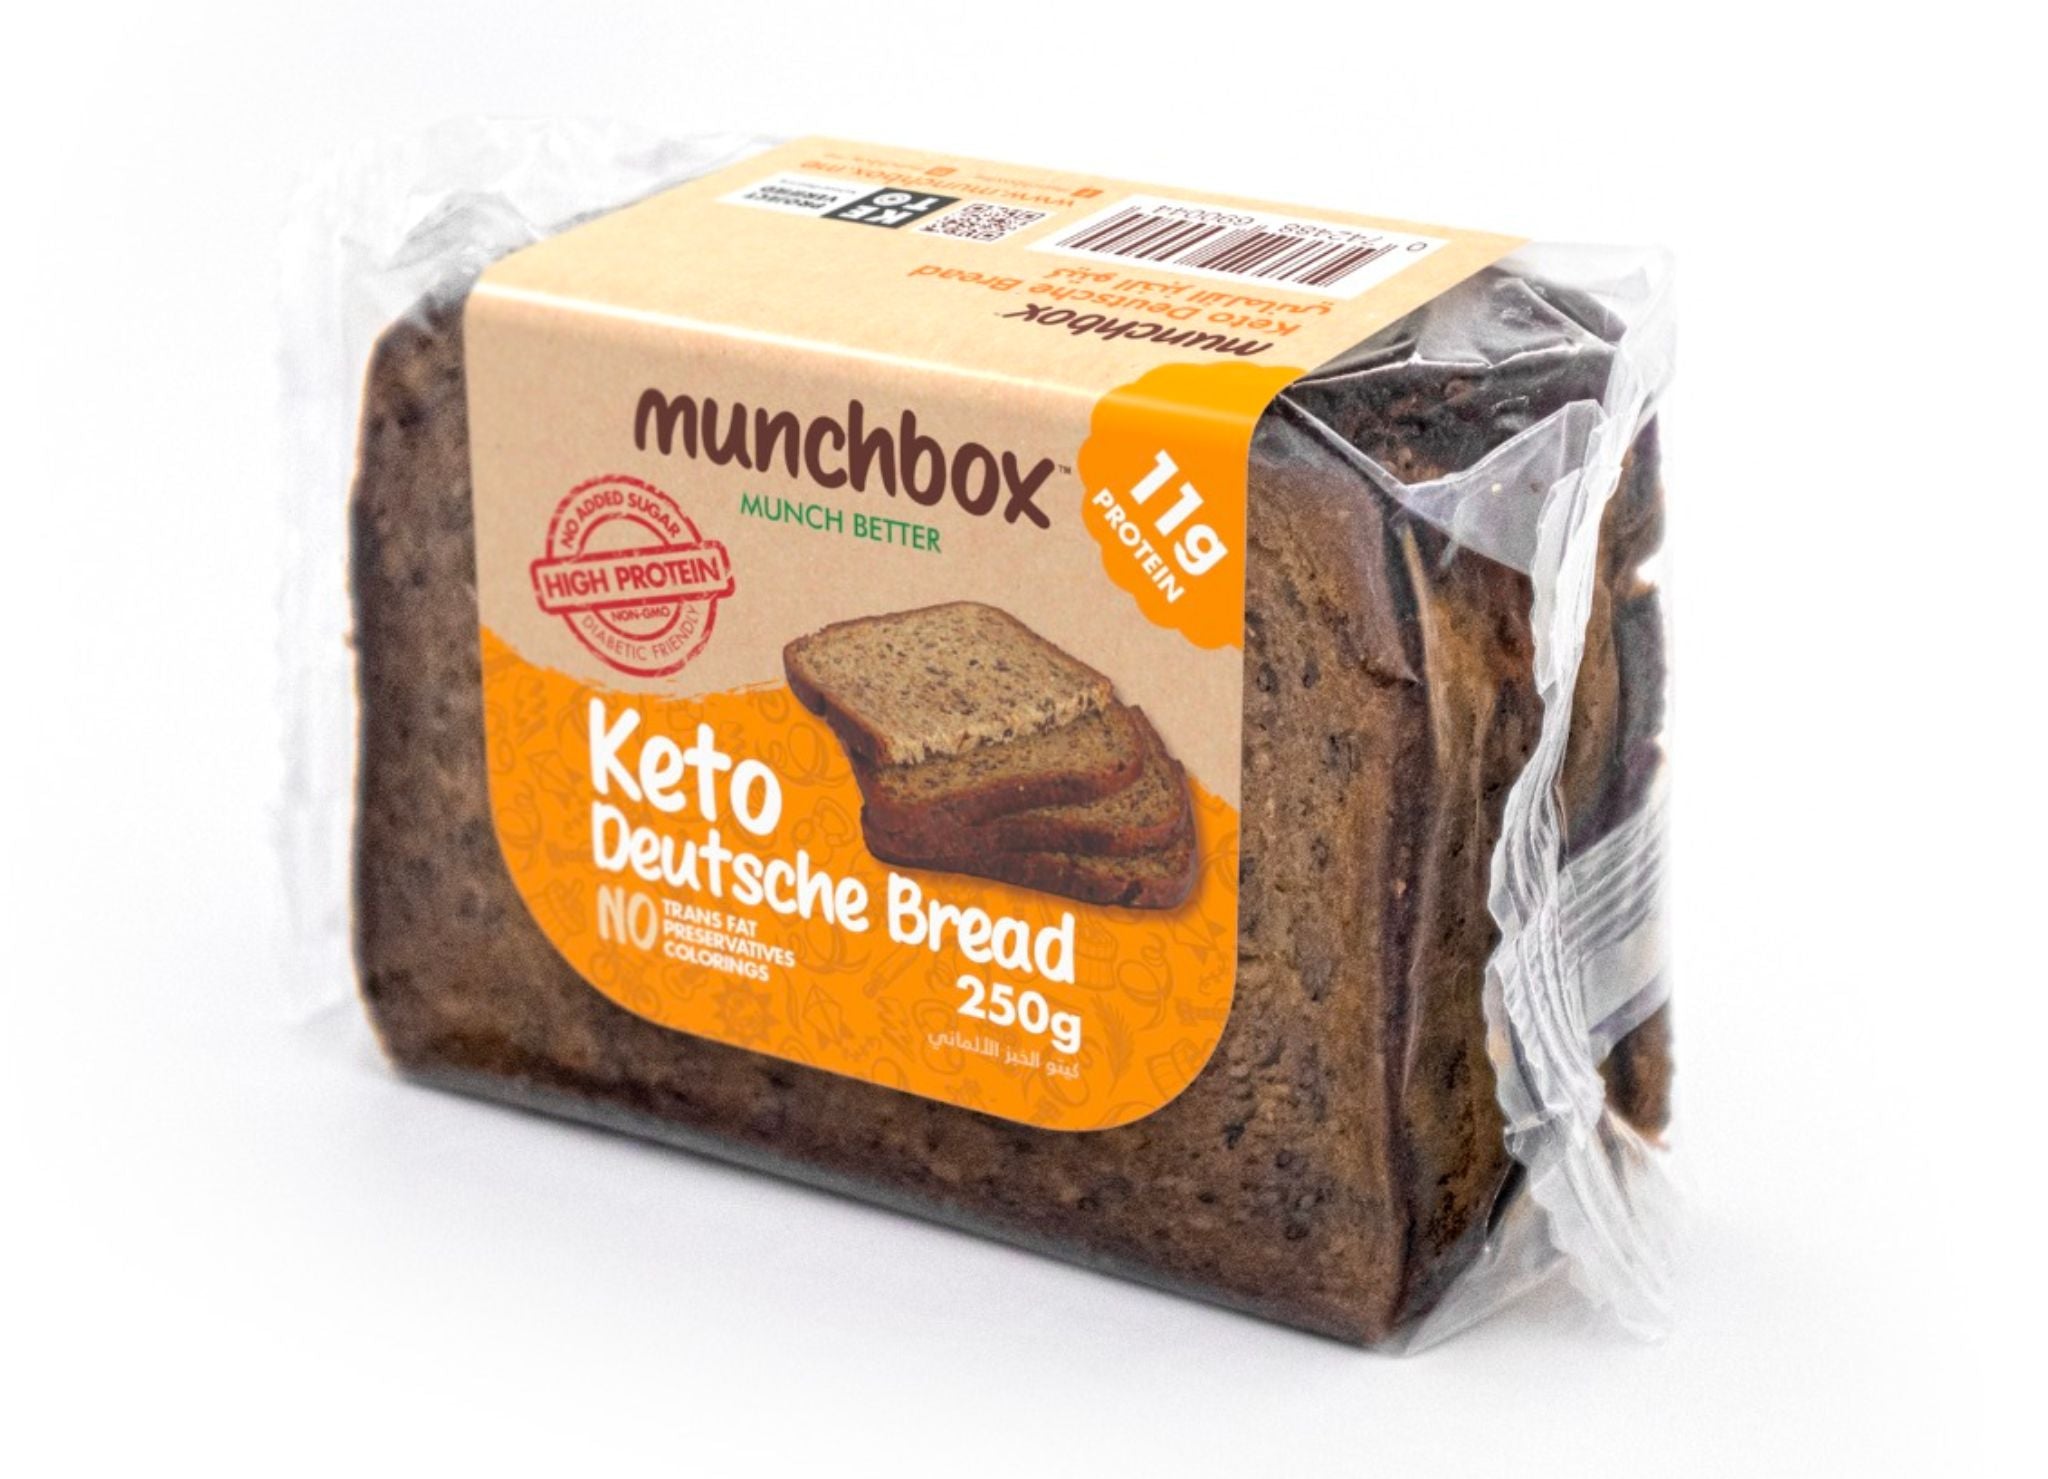 MUNCHBOX Keto Deutsche Bread, 250g